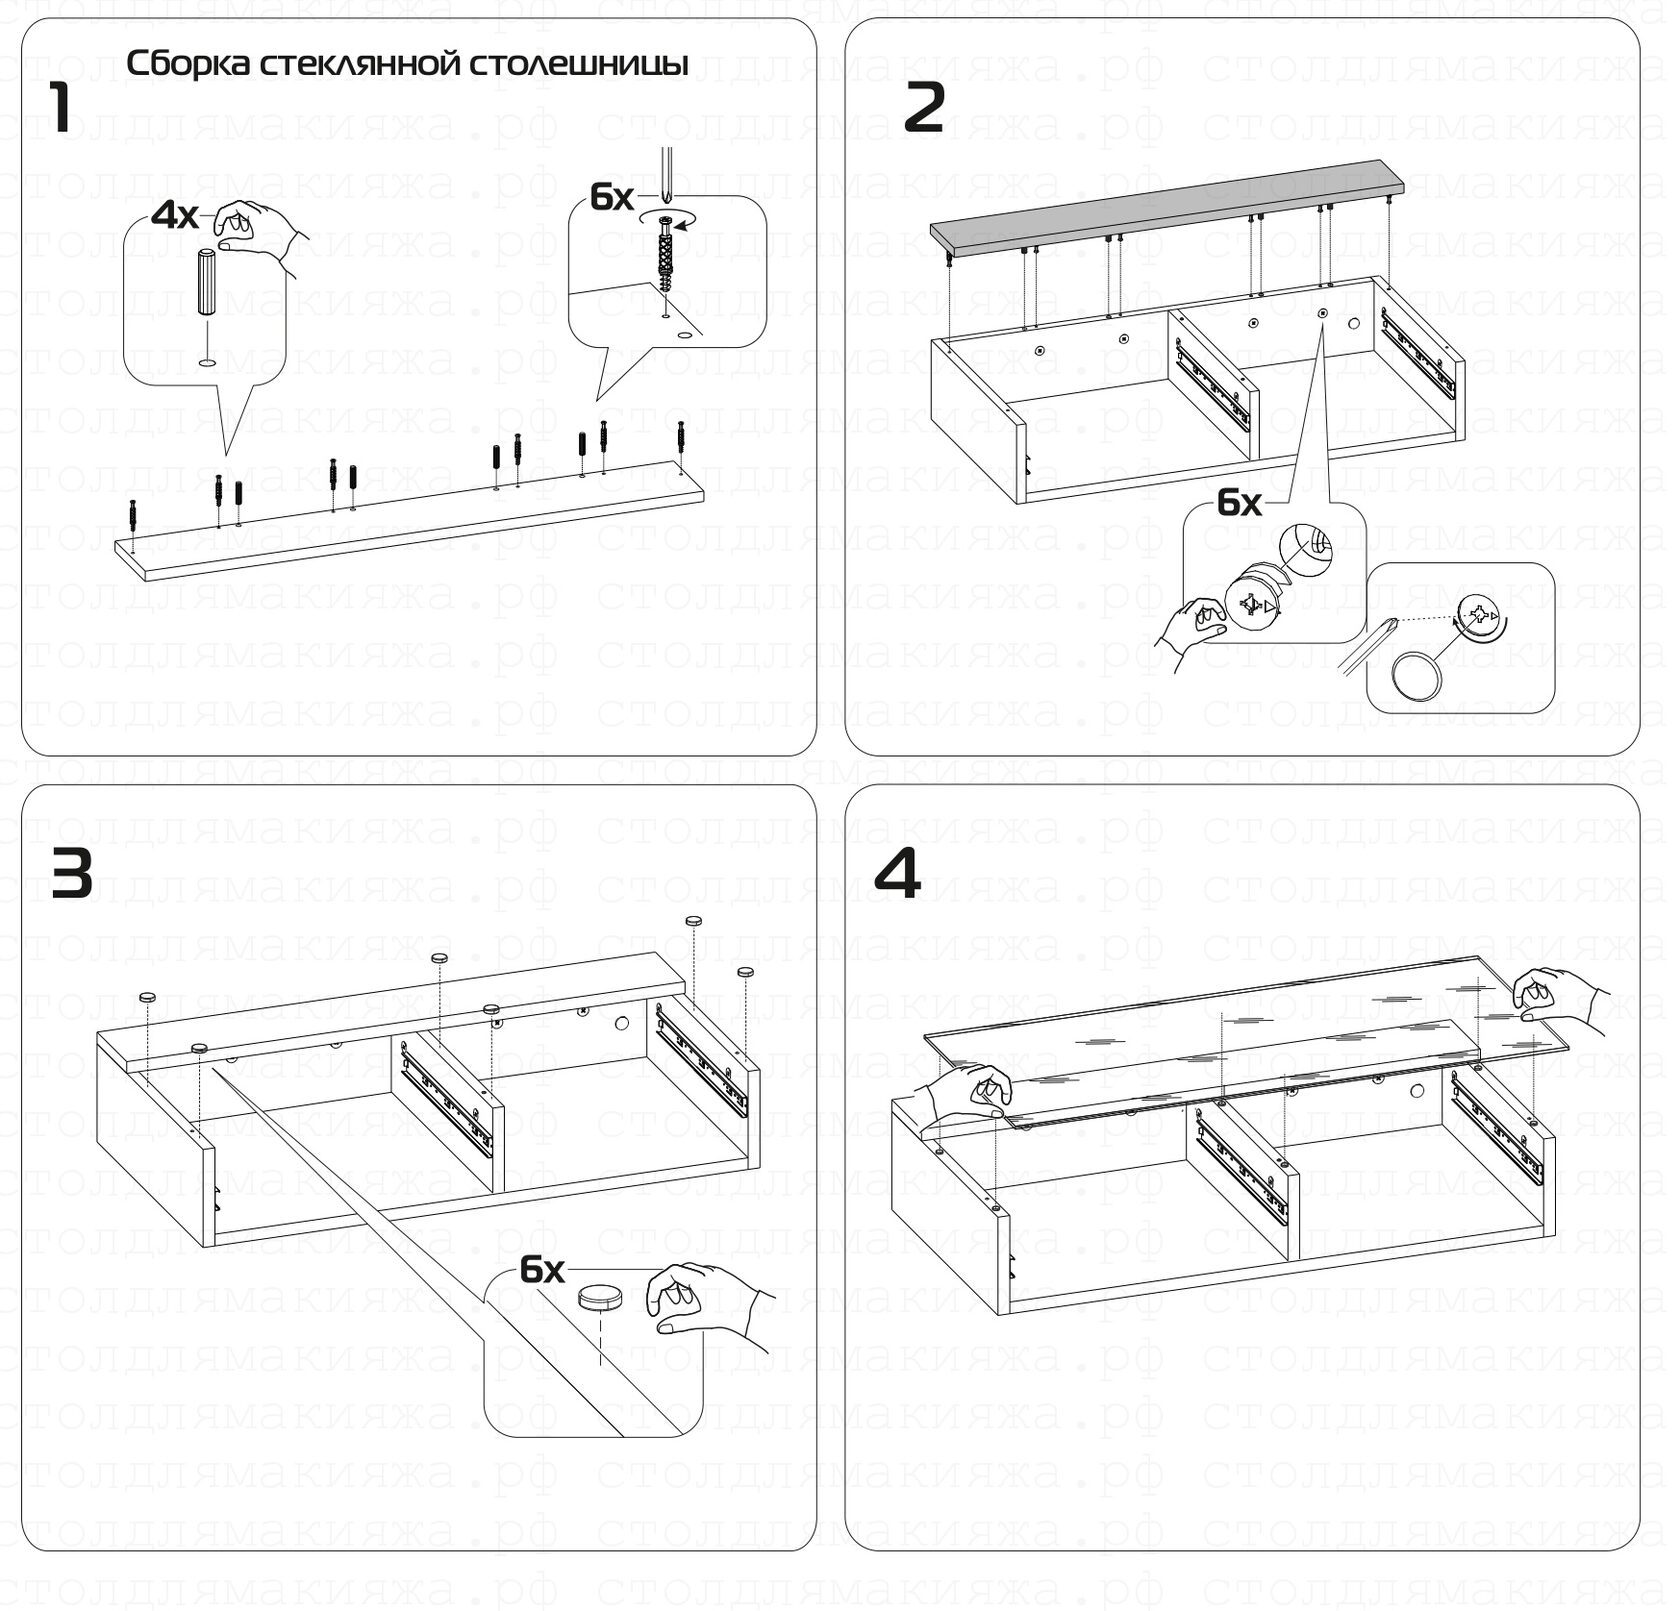 Инструкция по сборке туалетного столика с лампочками